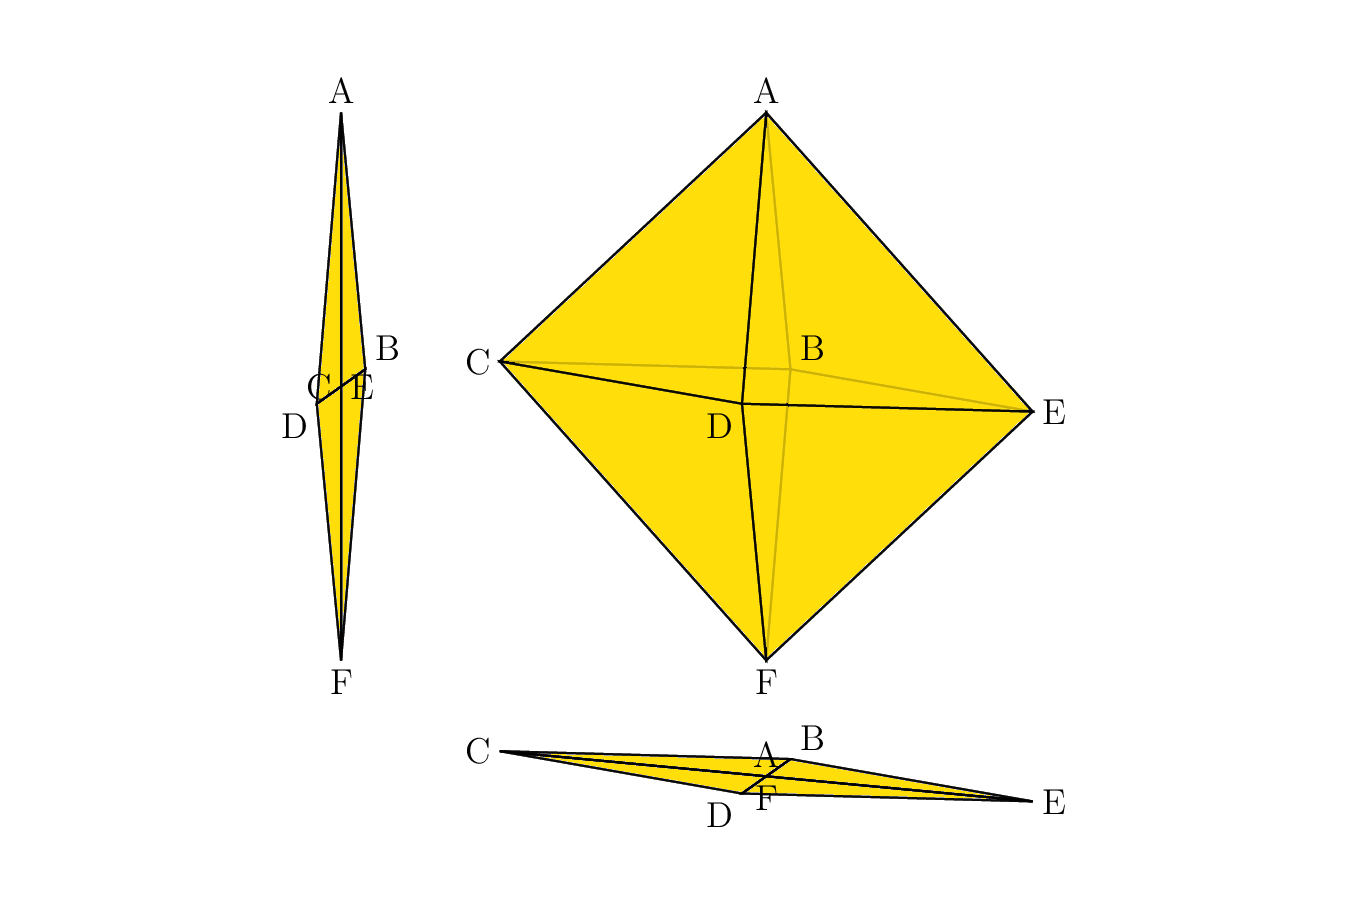 用 TiKZ 绘制空间几何的图形